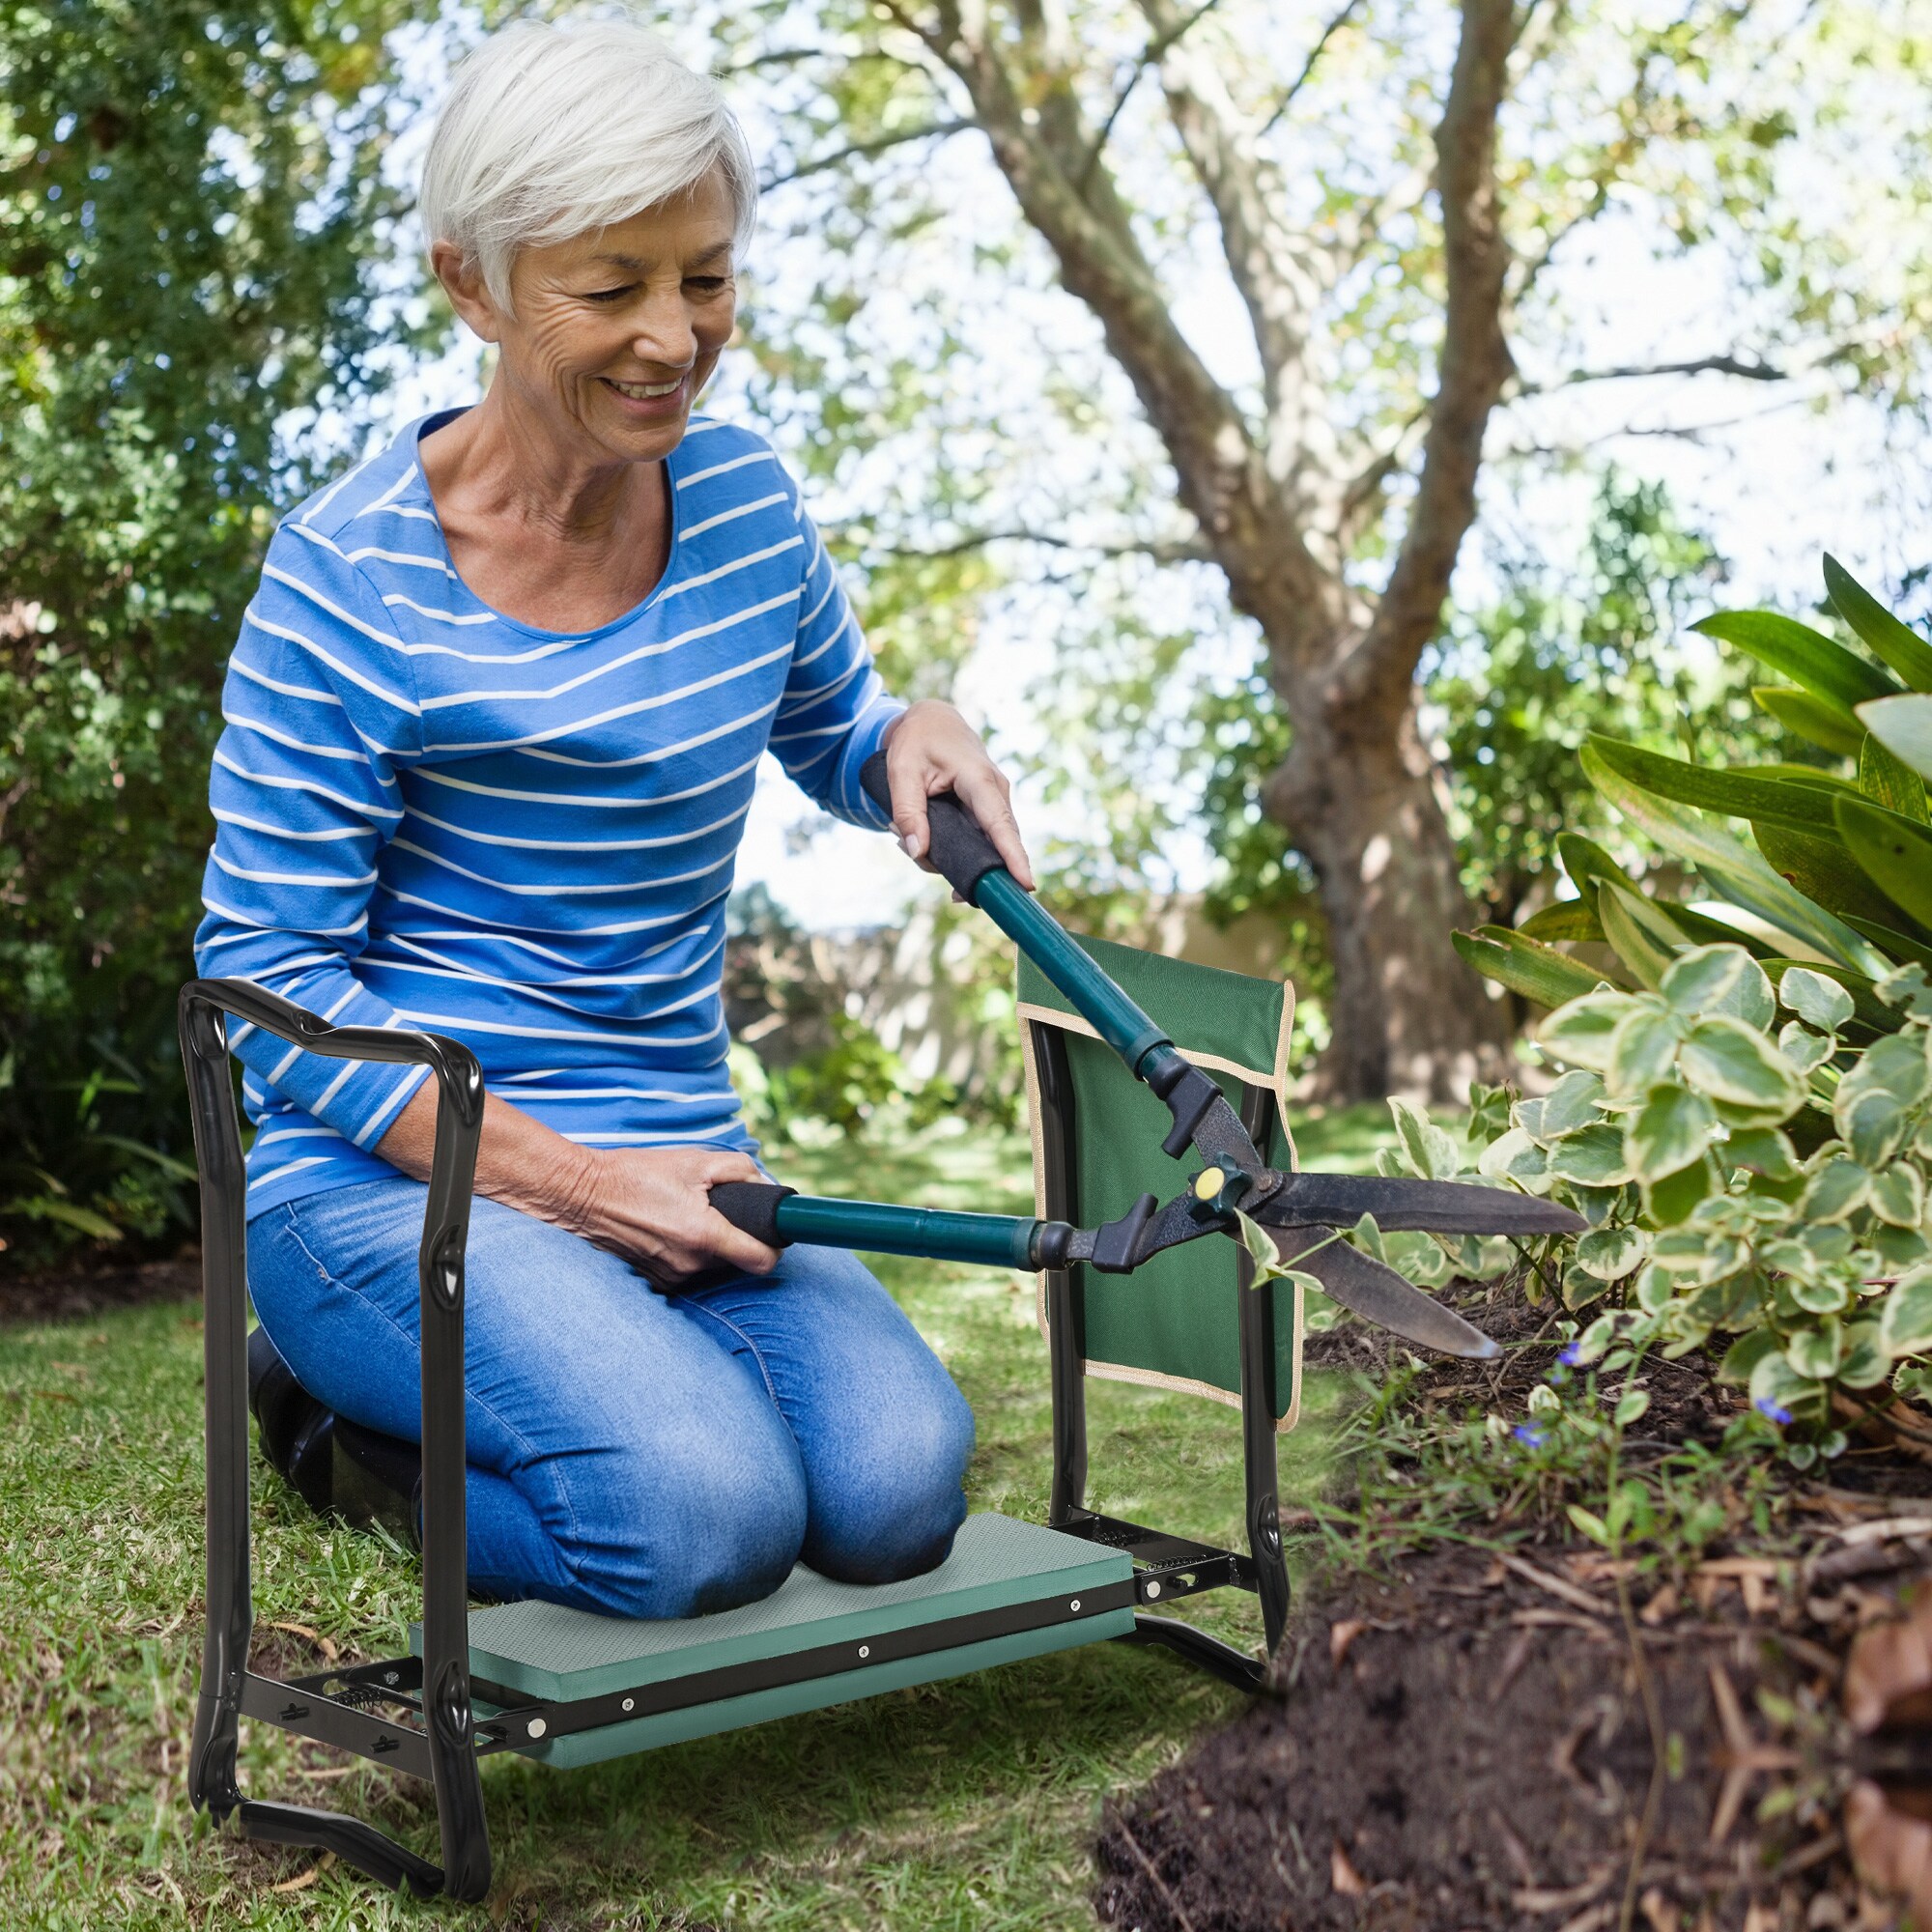 Garden Kneeling Stool Folding Kneeler Cushion Pad Chair Gardening Tool Seat Mat 